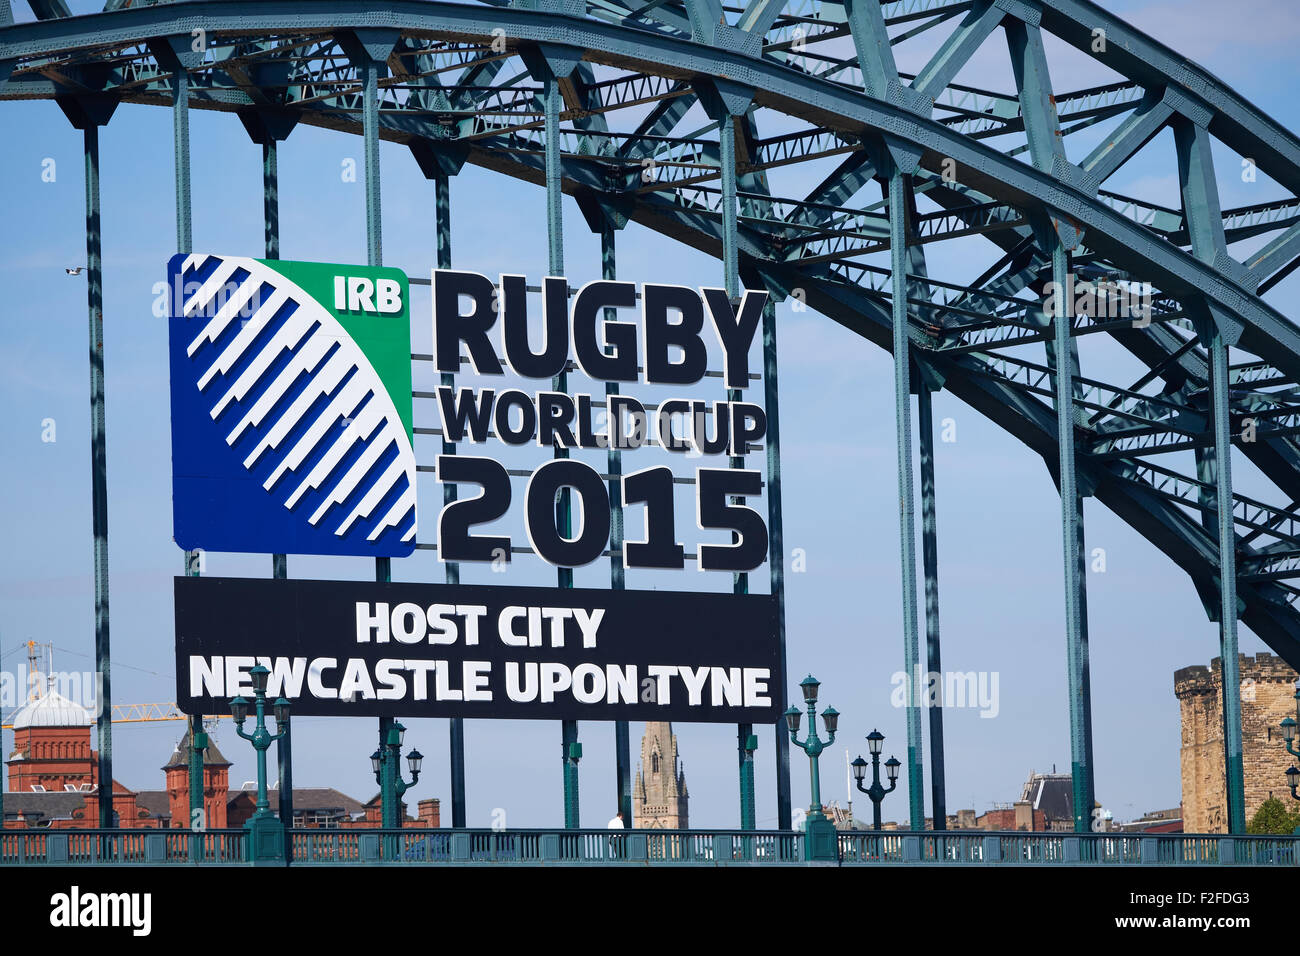 La Rugby World Cup 2015 hosts firmar en el Puente Tyne, Newcastle Upon Tyne, Reino Unido. Foto de stock